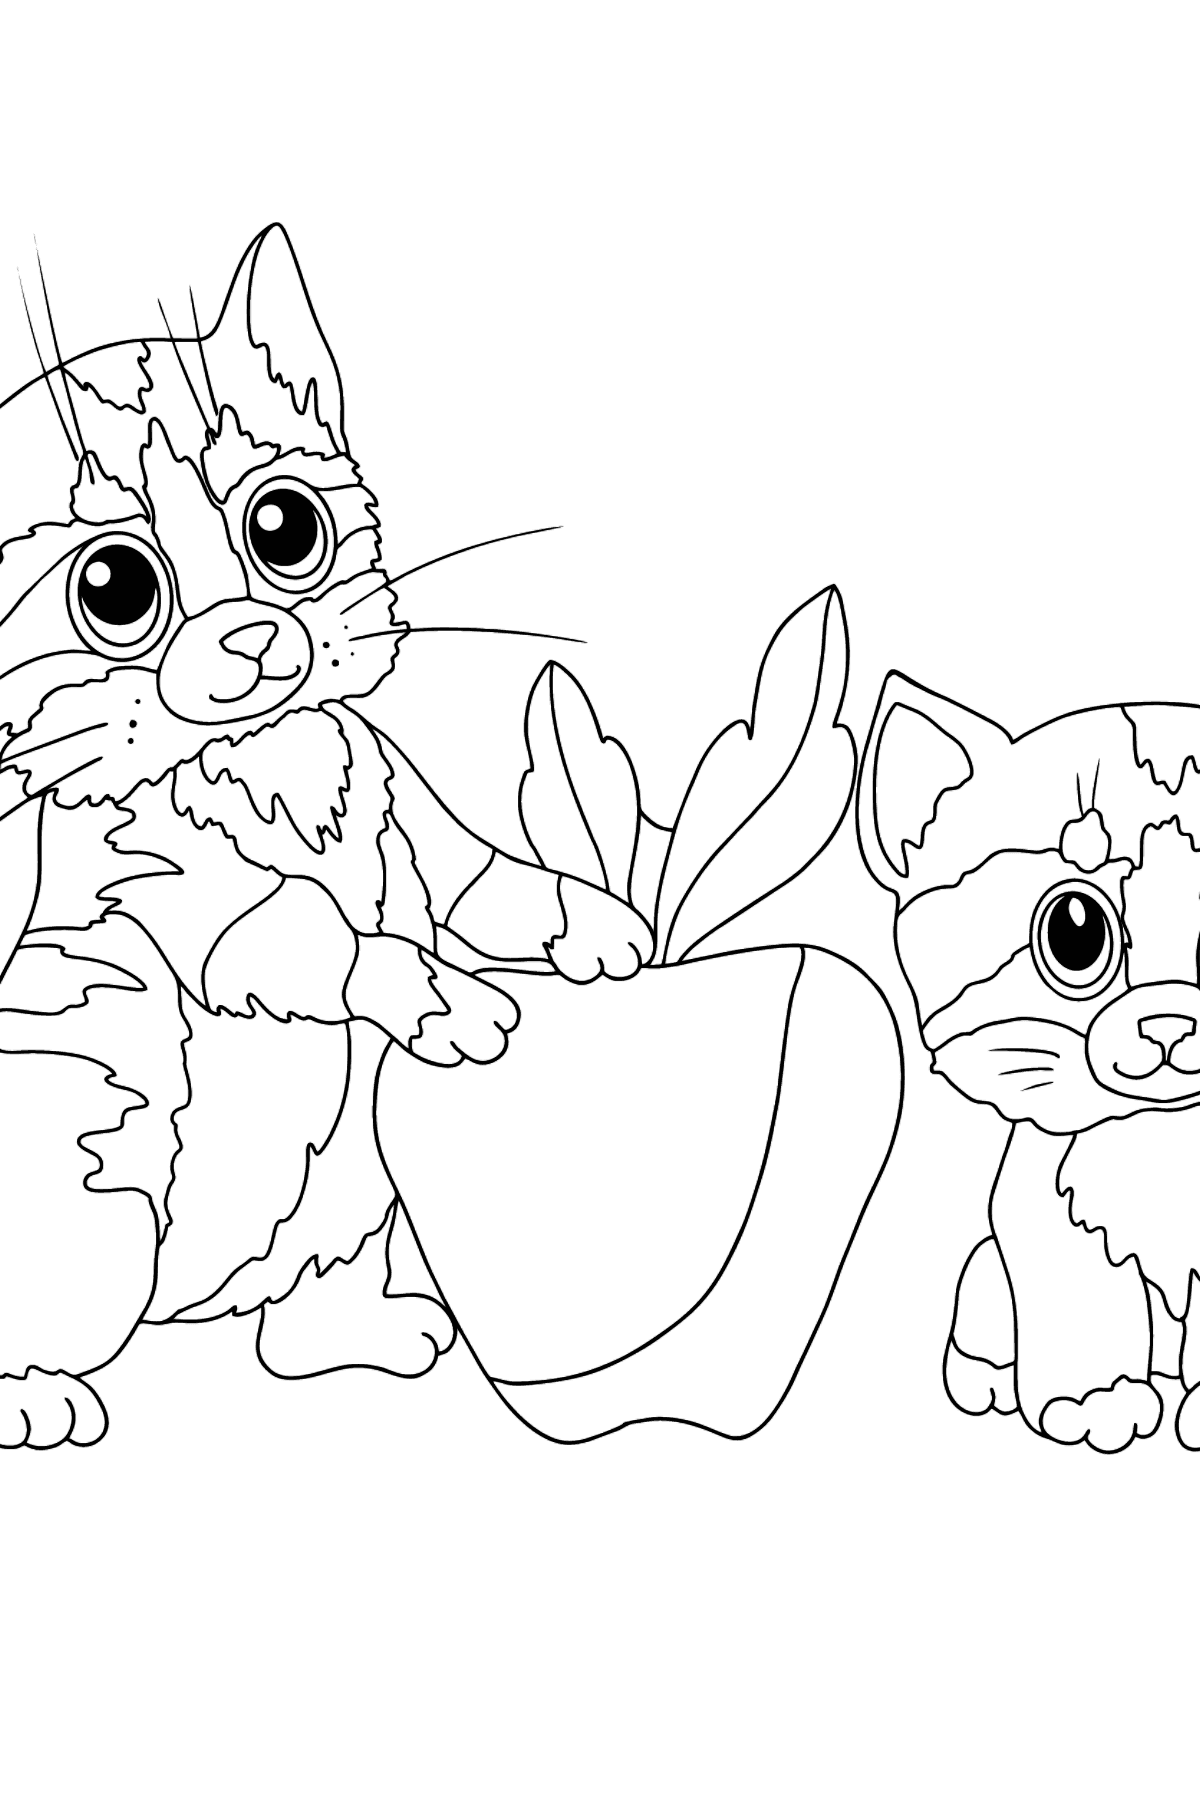 Disegno da colorare di gattini - Disegni da colorare per bambini